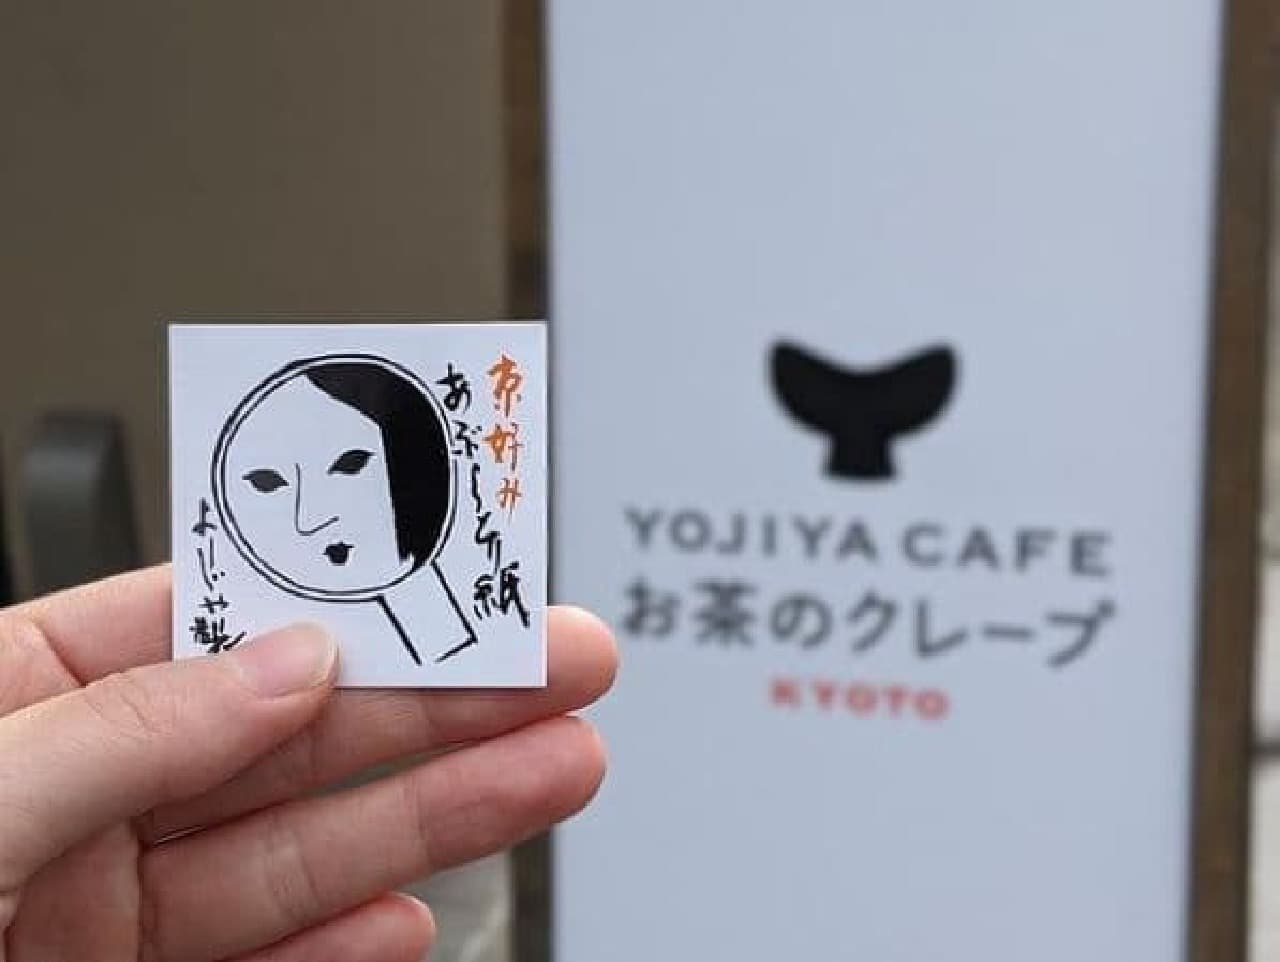 YOJIYA CAFE お茶のクレープ